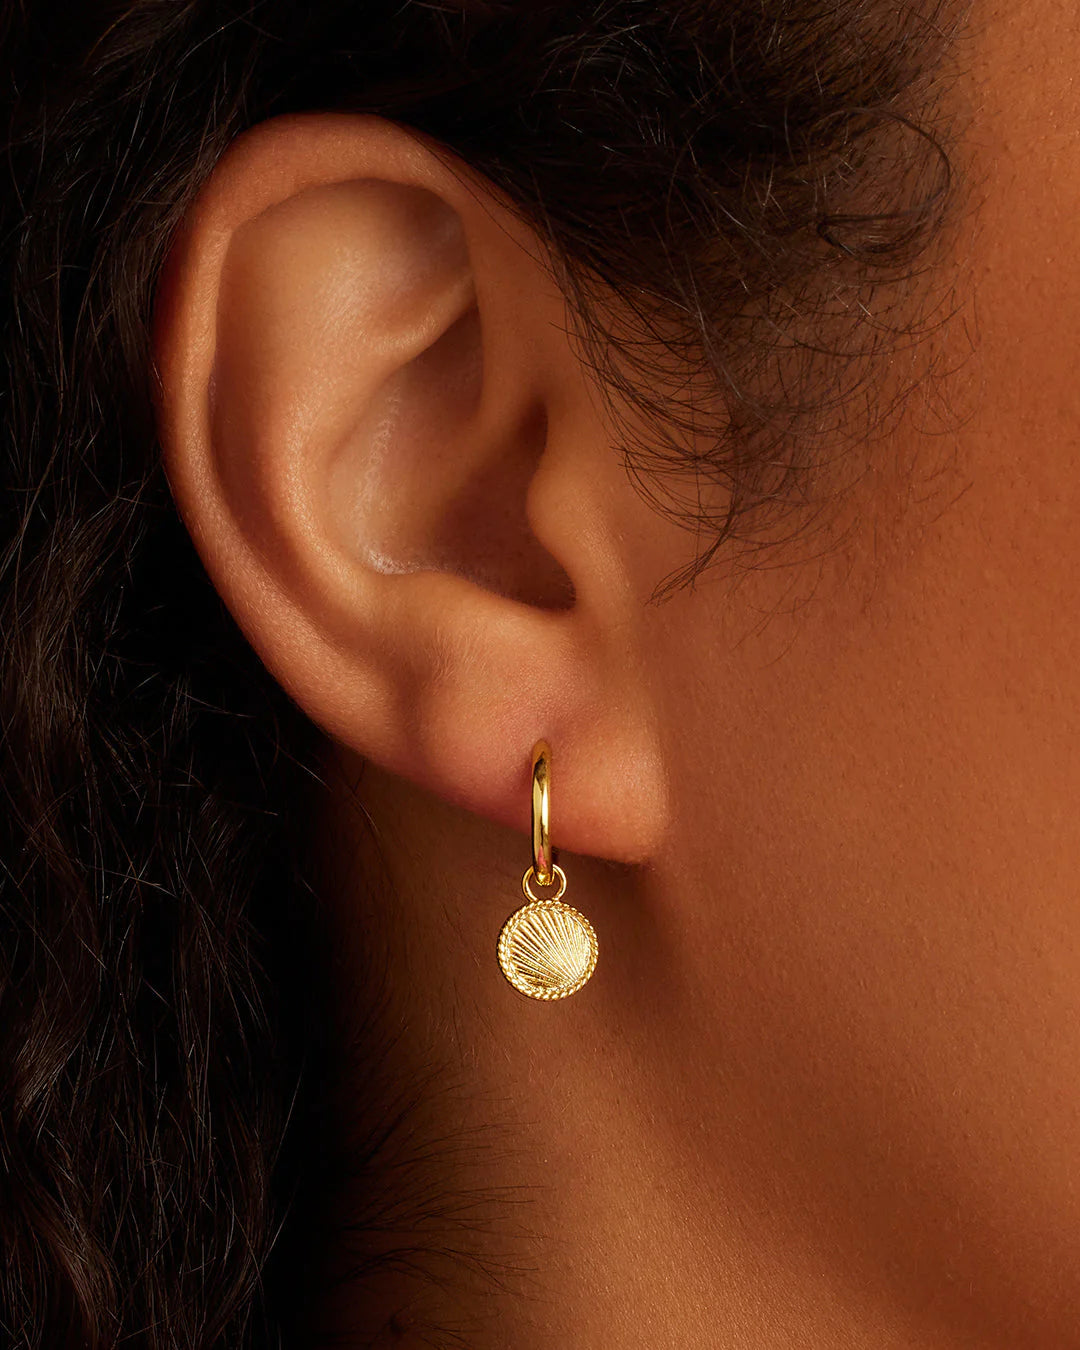 Gorjana Women's Classic Huggies Earring